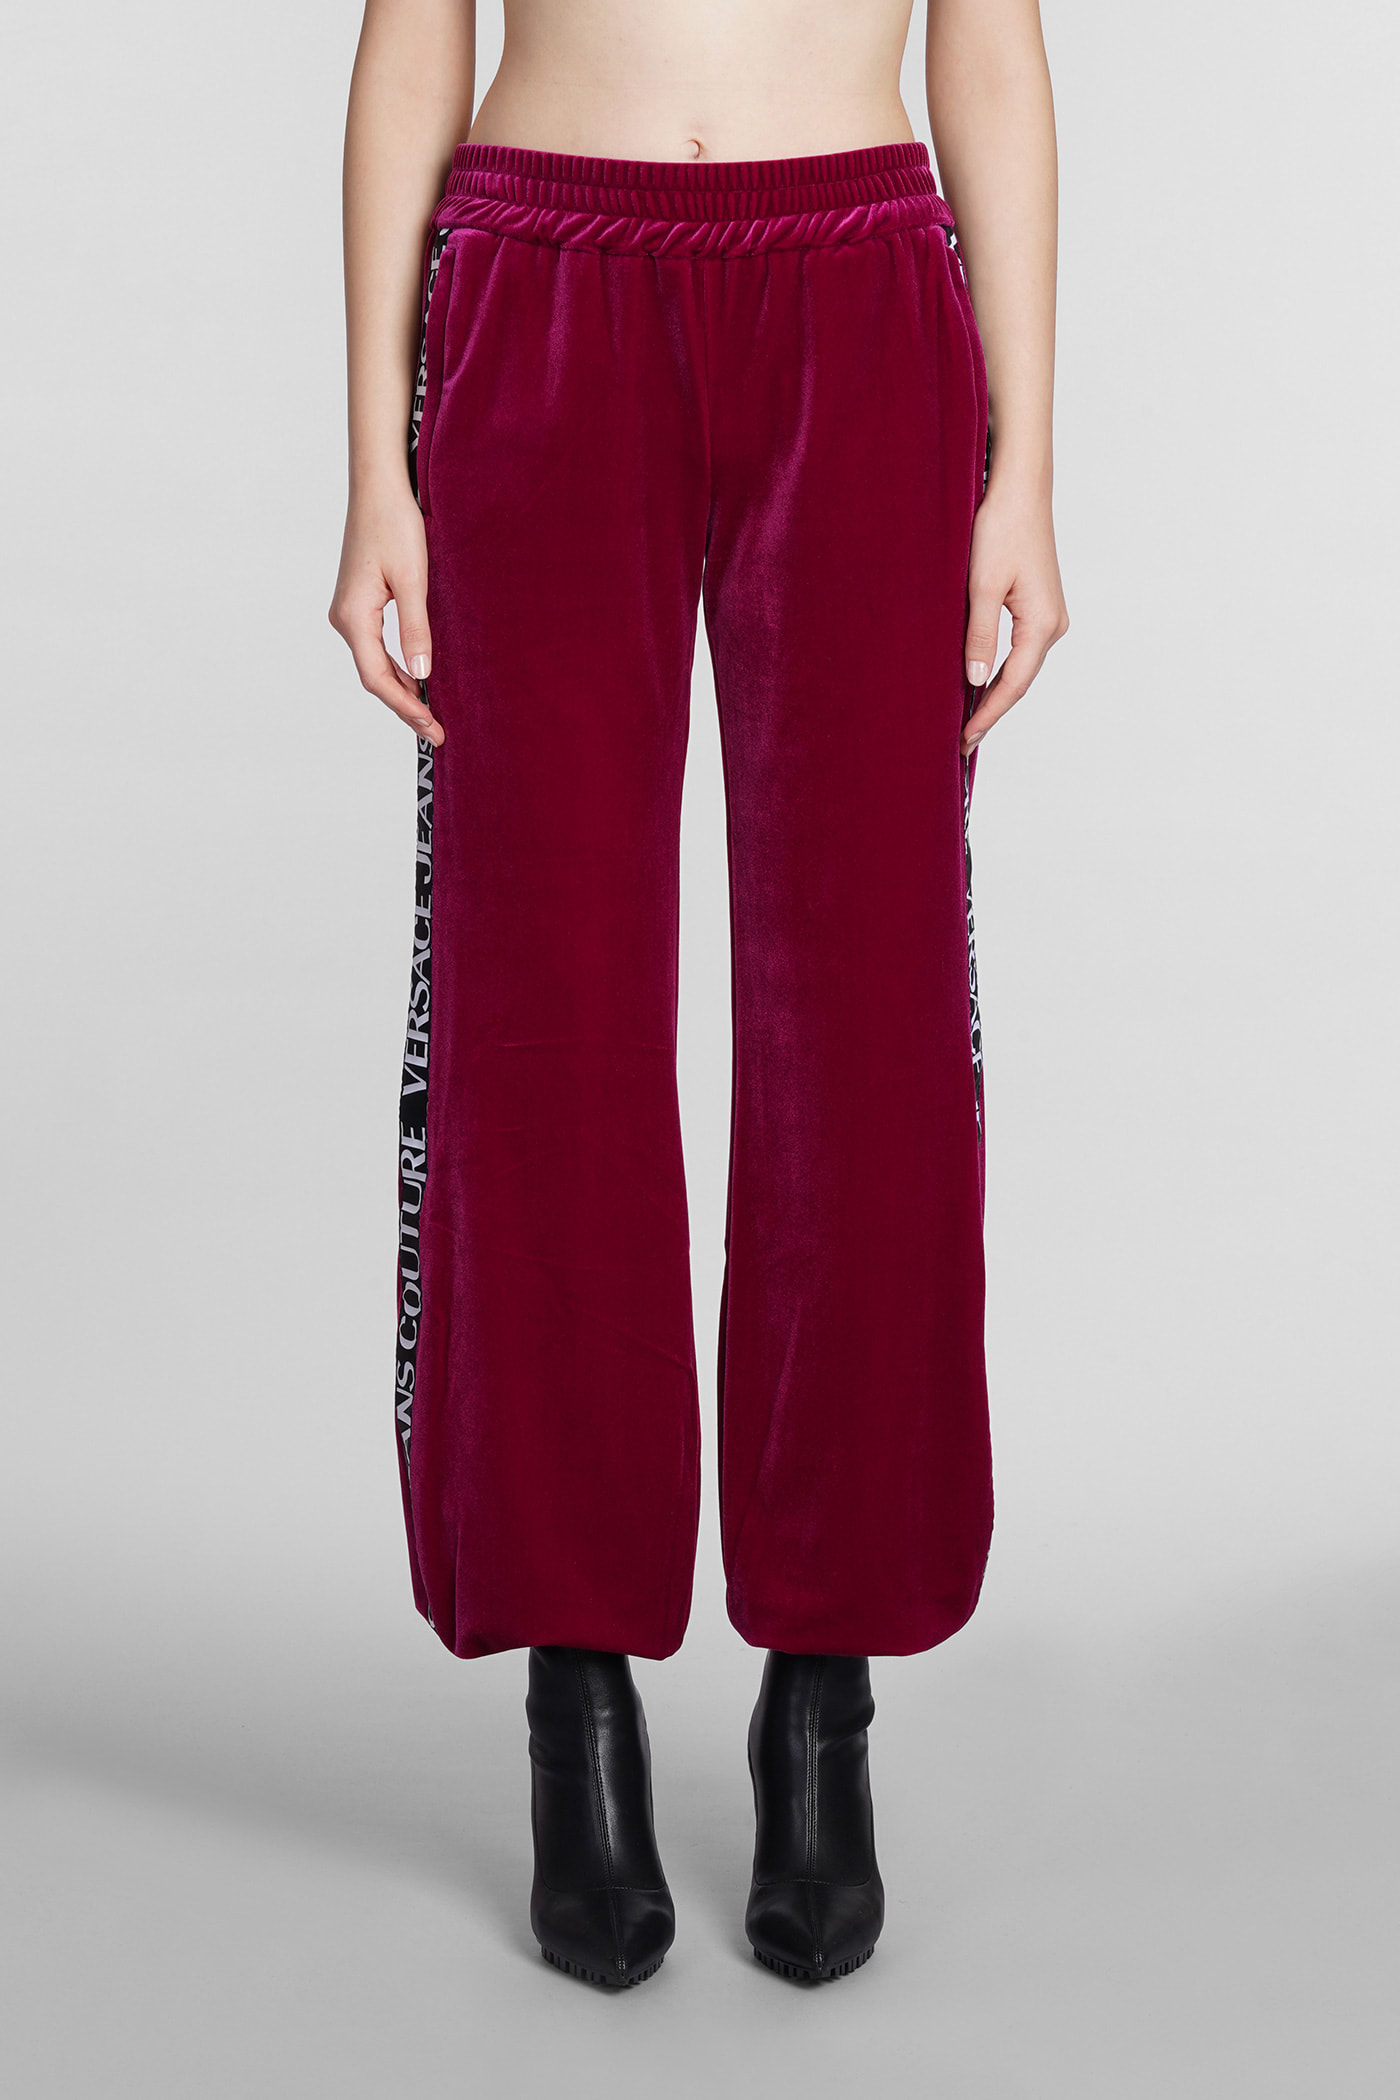 Versace Jeans Couture Pants In Bordeaux Velvet